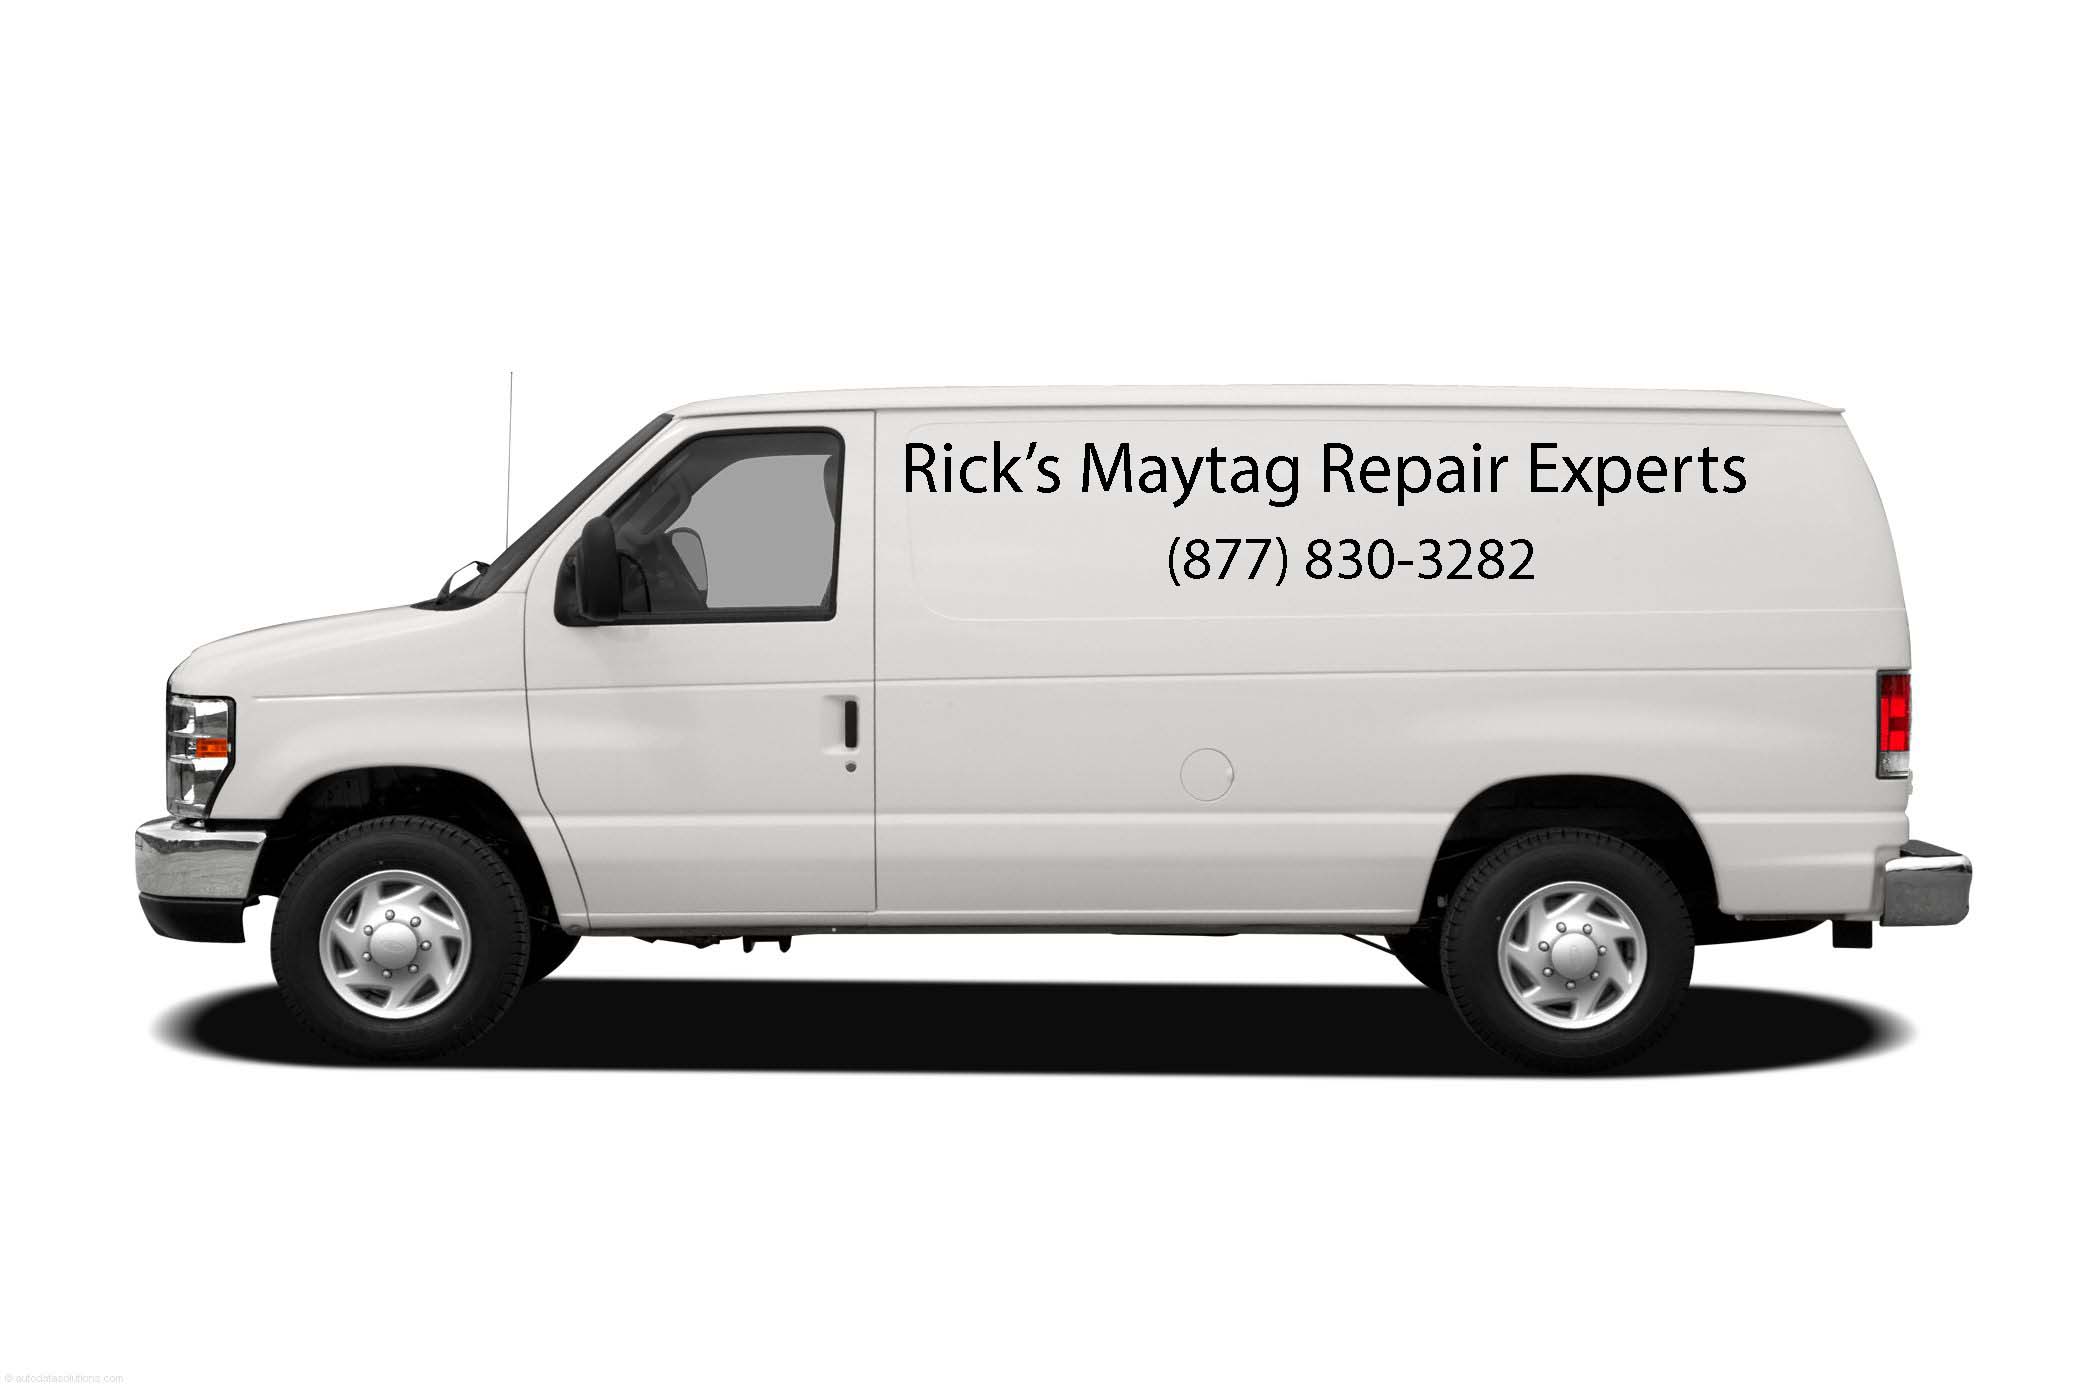 Rick's Maytag Repair Experts